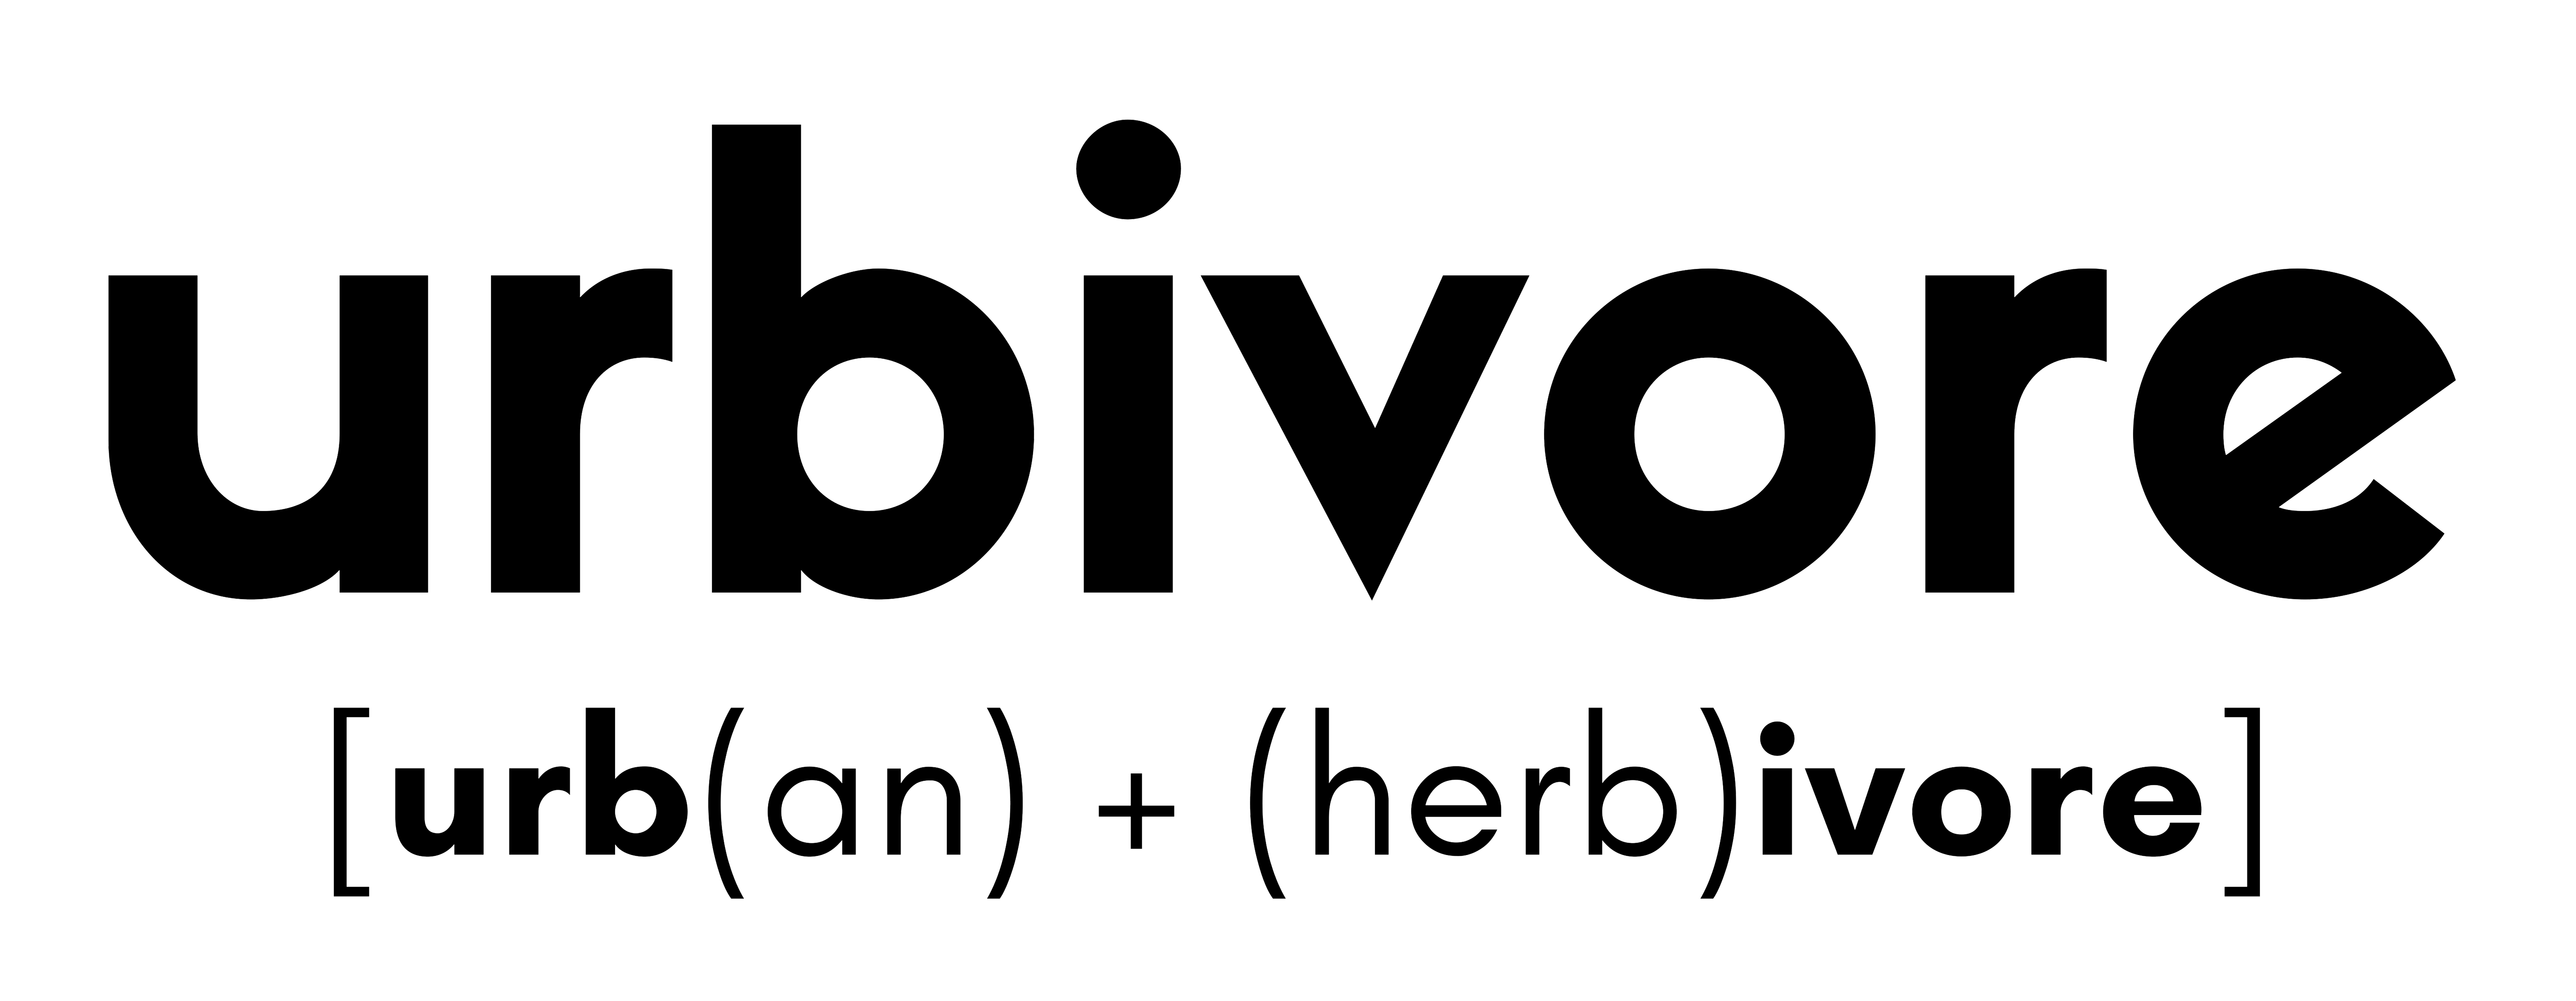 urbivore logo